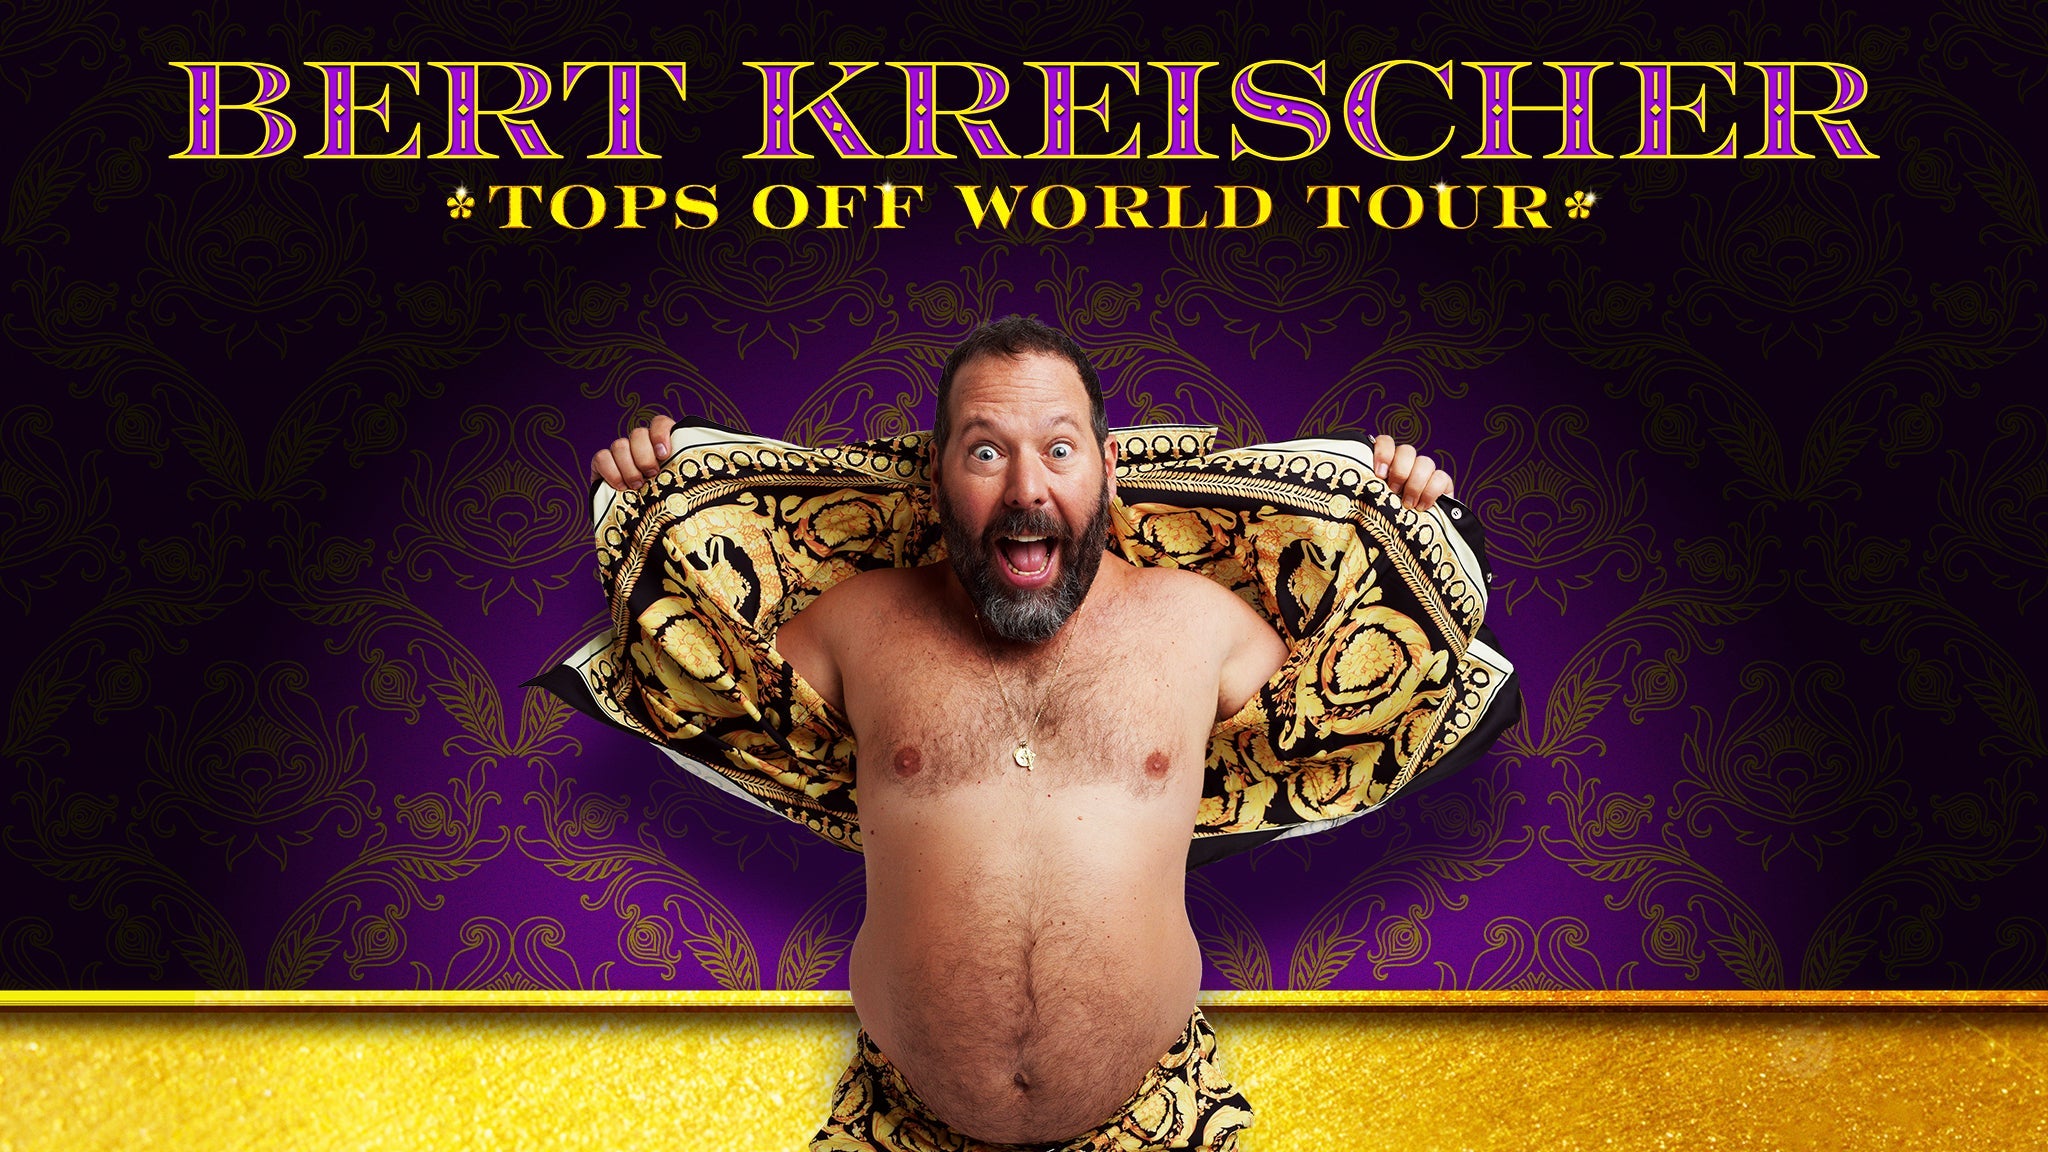 Bert Kreischer Tops Off World Tour tickets, presale info and more